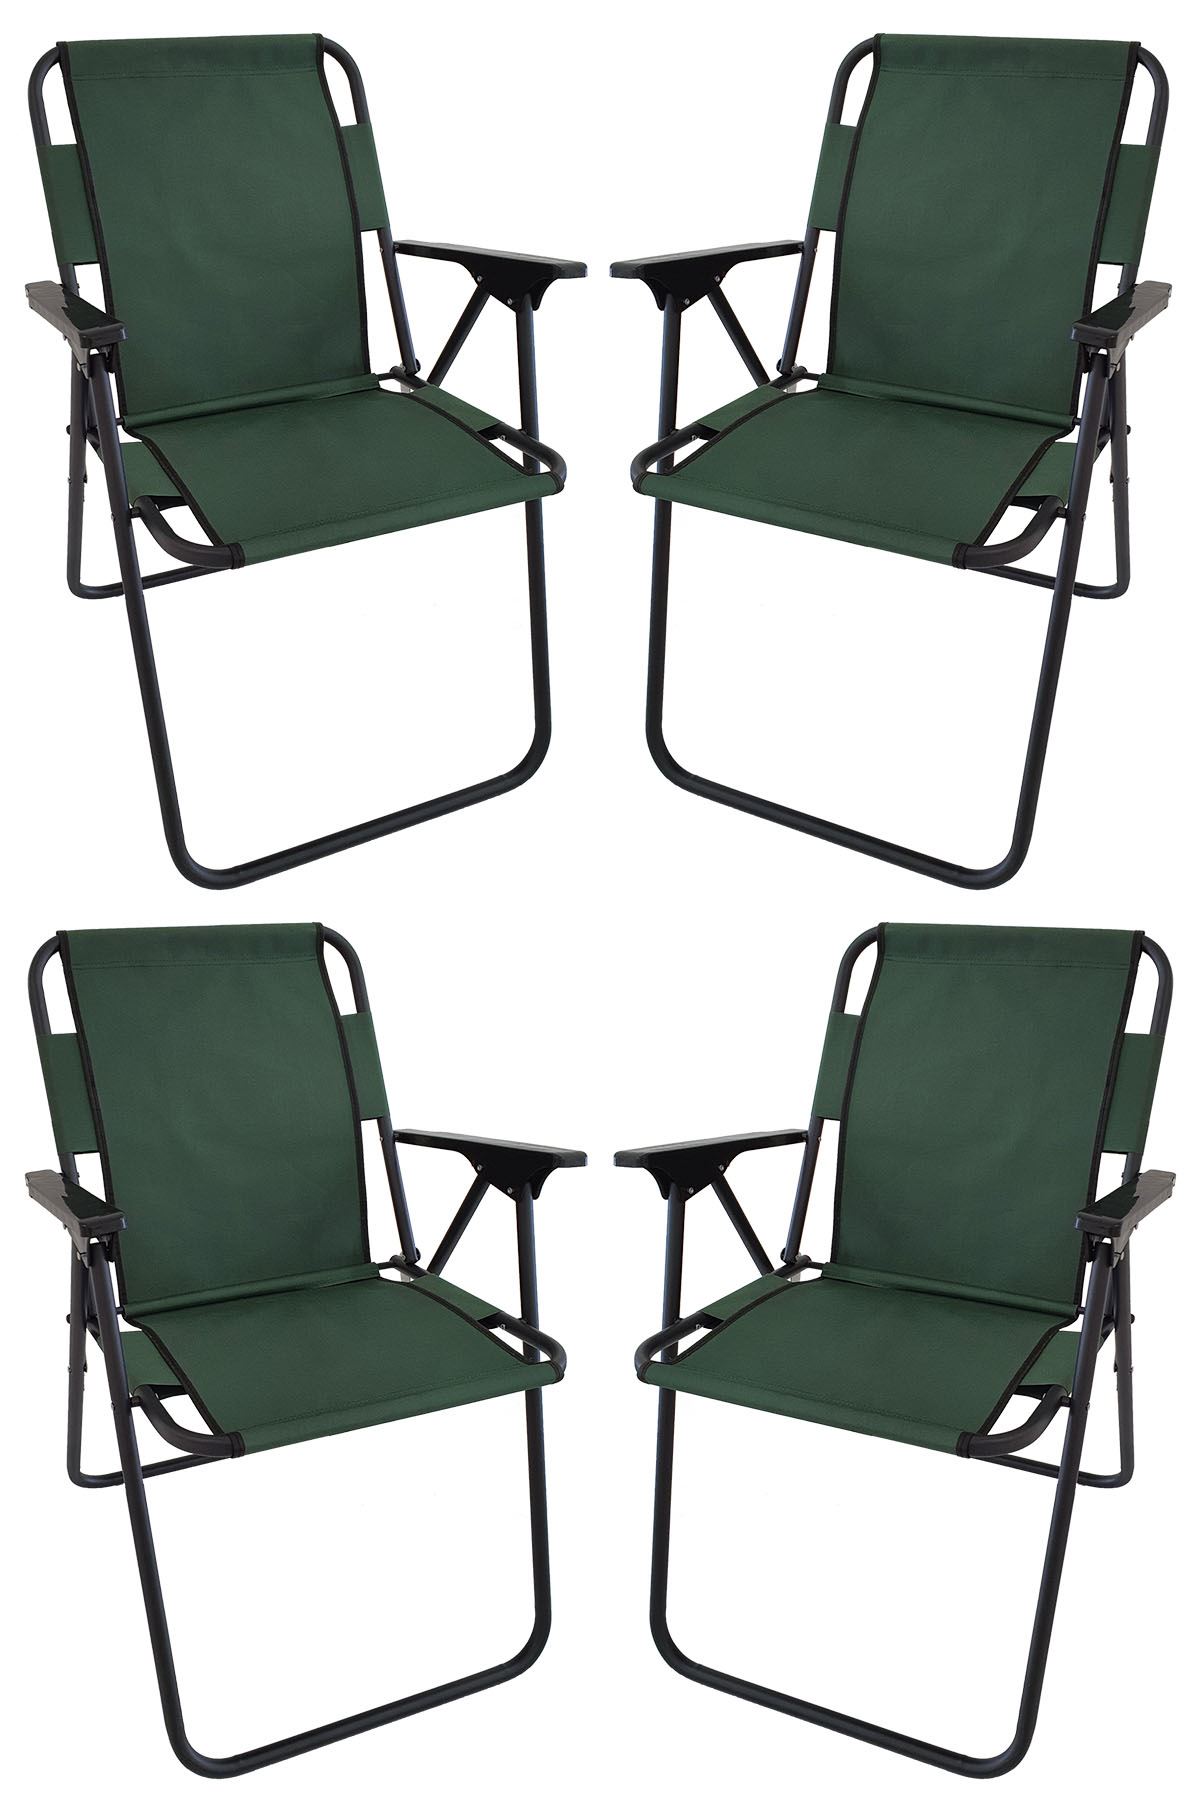 Bofigo 60X80 Çam Desenli Katlanır Masa + 4 Adet Katlanır Sandalye Kamp Seti Bahçe Takımı Yeşil